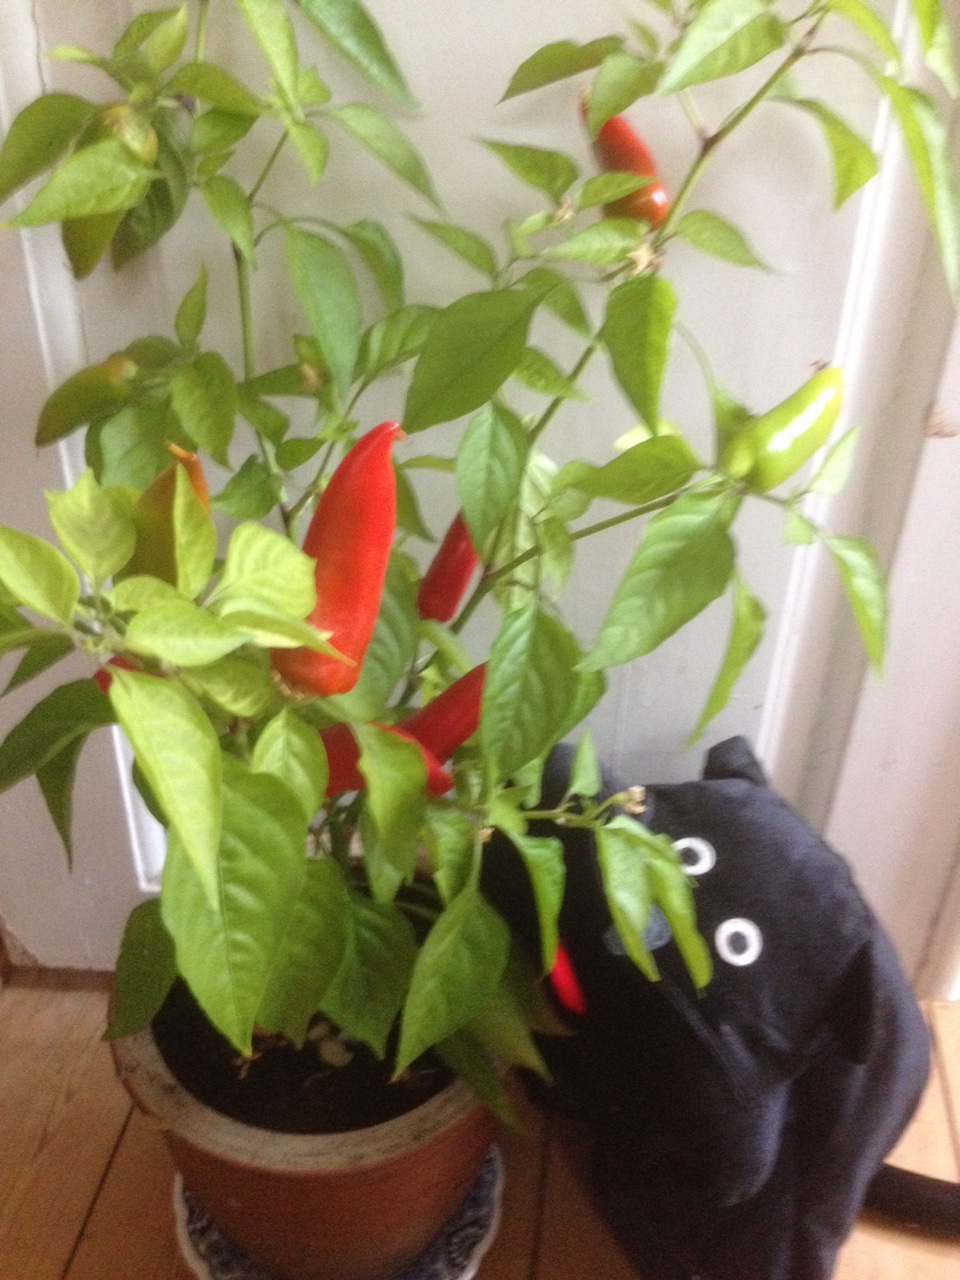 Skvat Cat's Hot Burrito Chili Plant